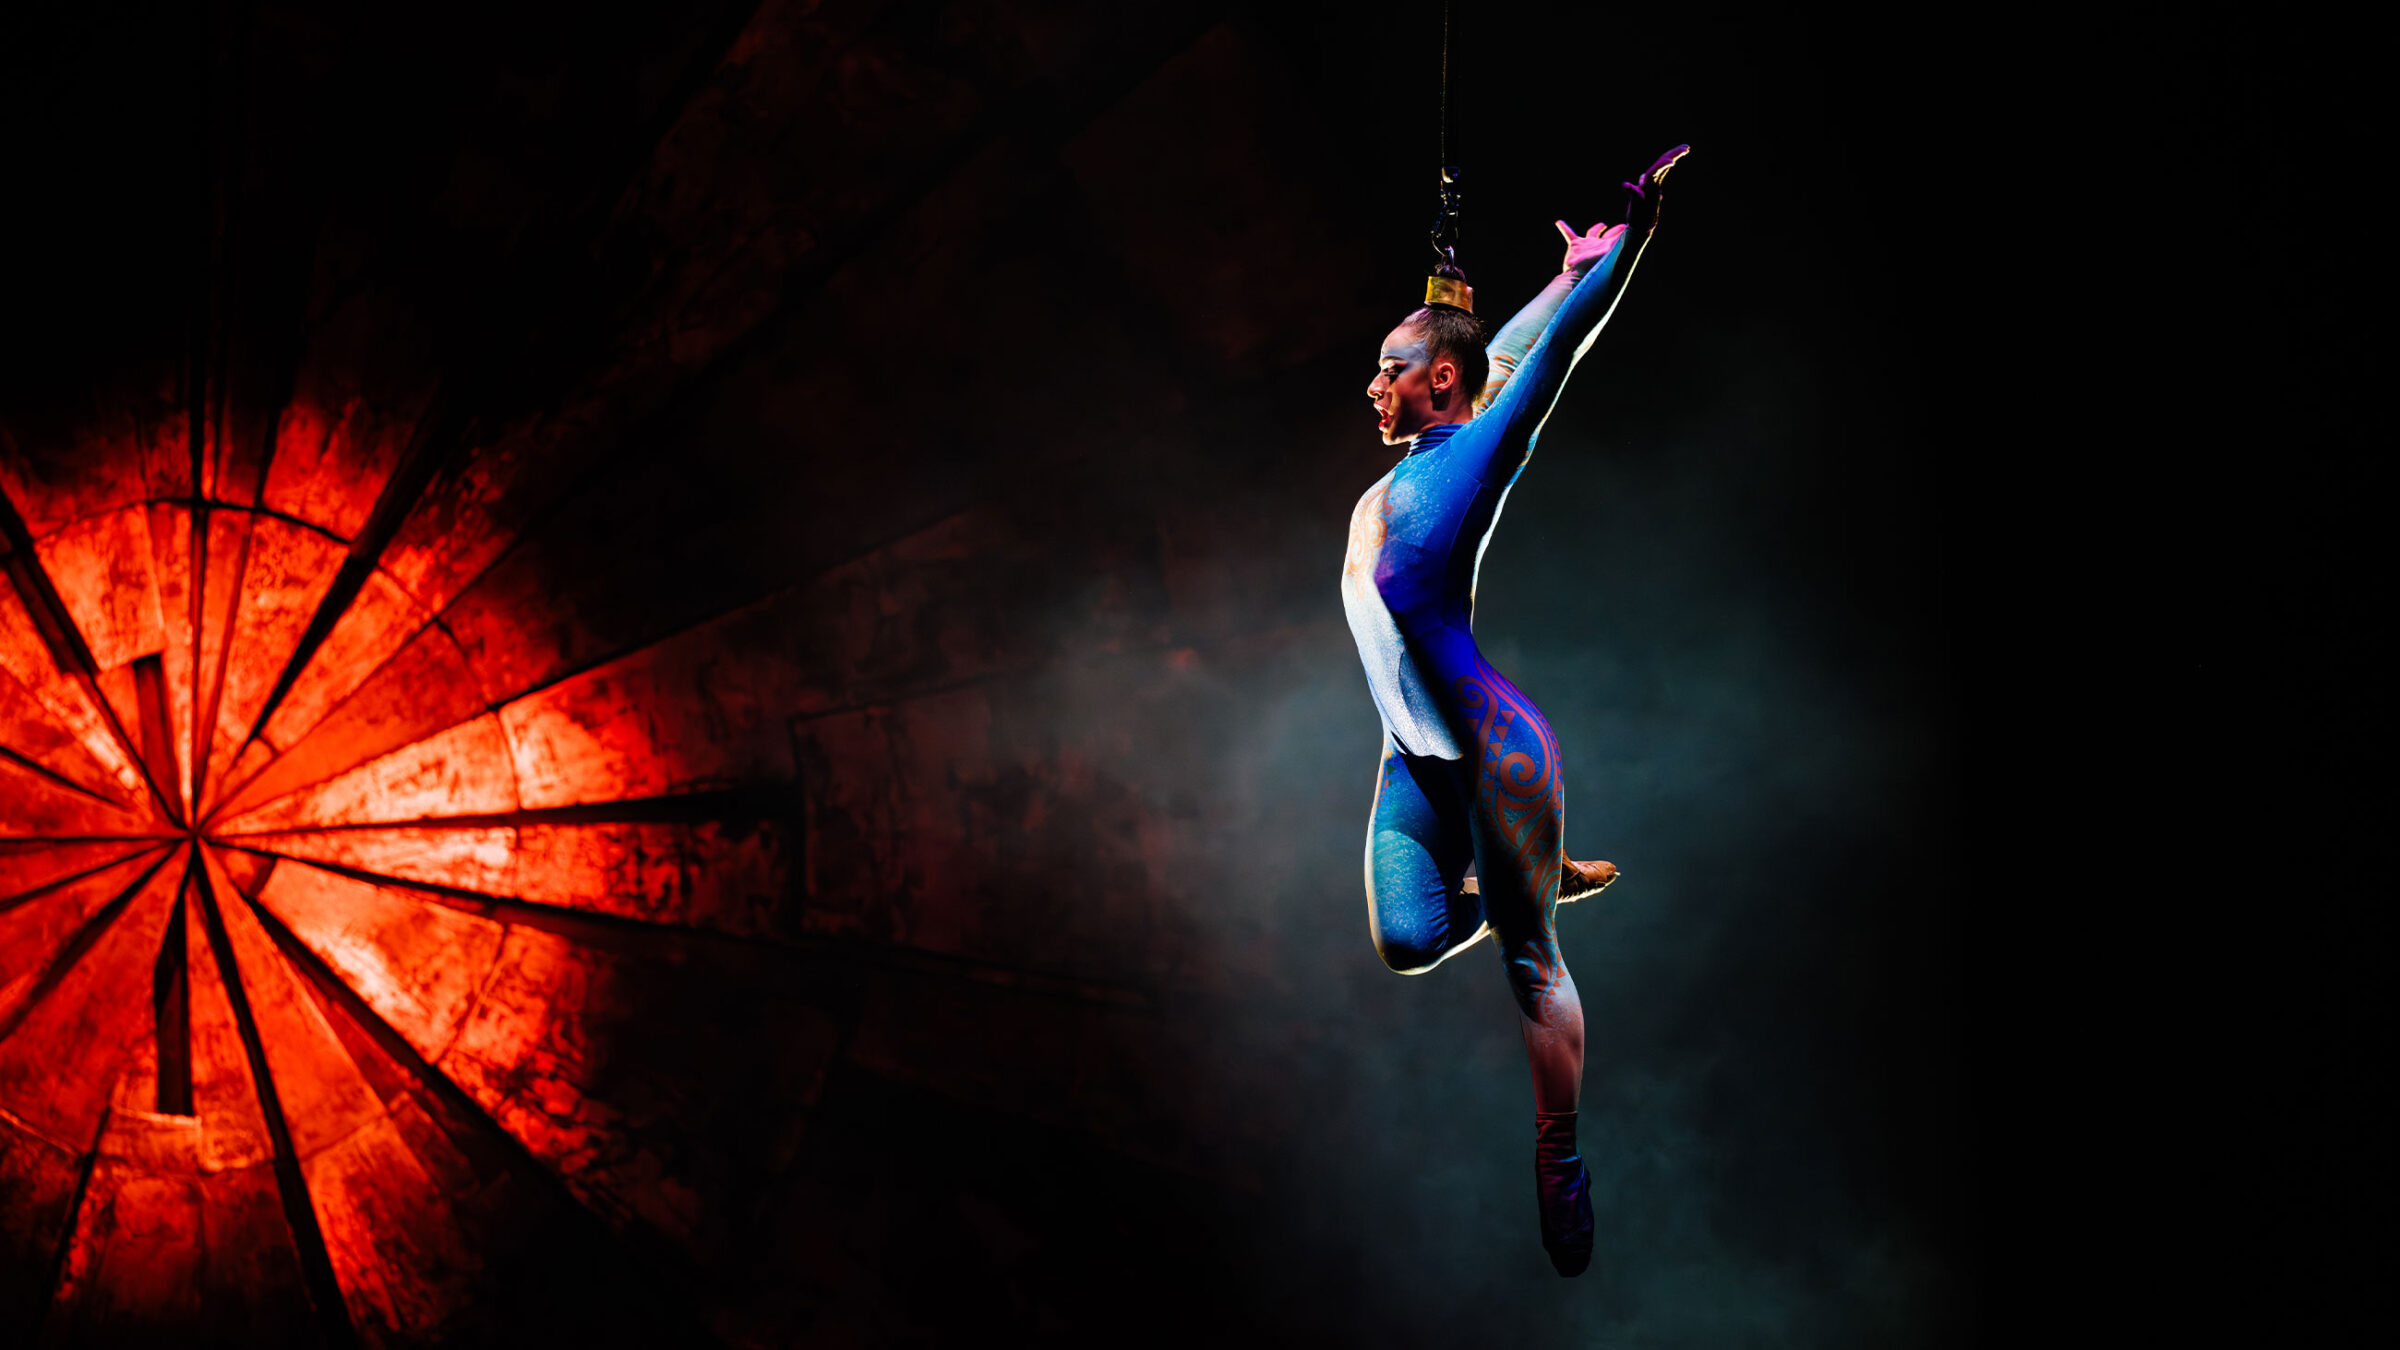 Artistin in blauem Akrobatikanzug führt an einem Seil in der Luft eine Pose aus, vor einem roten und schwarzen Hintergrund.